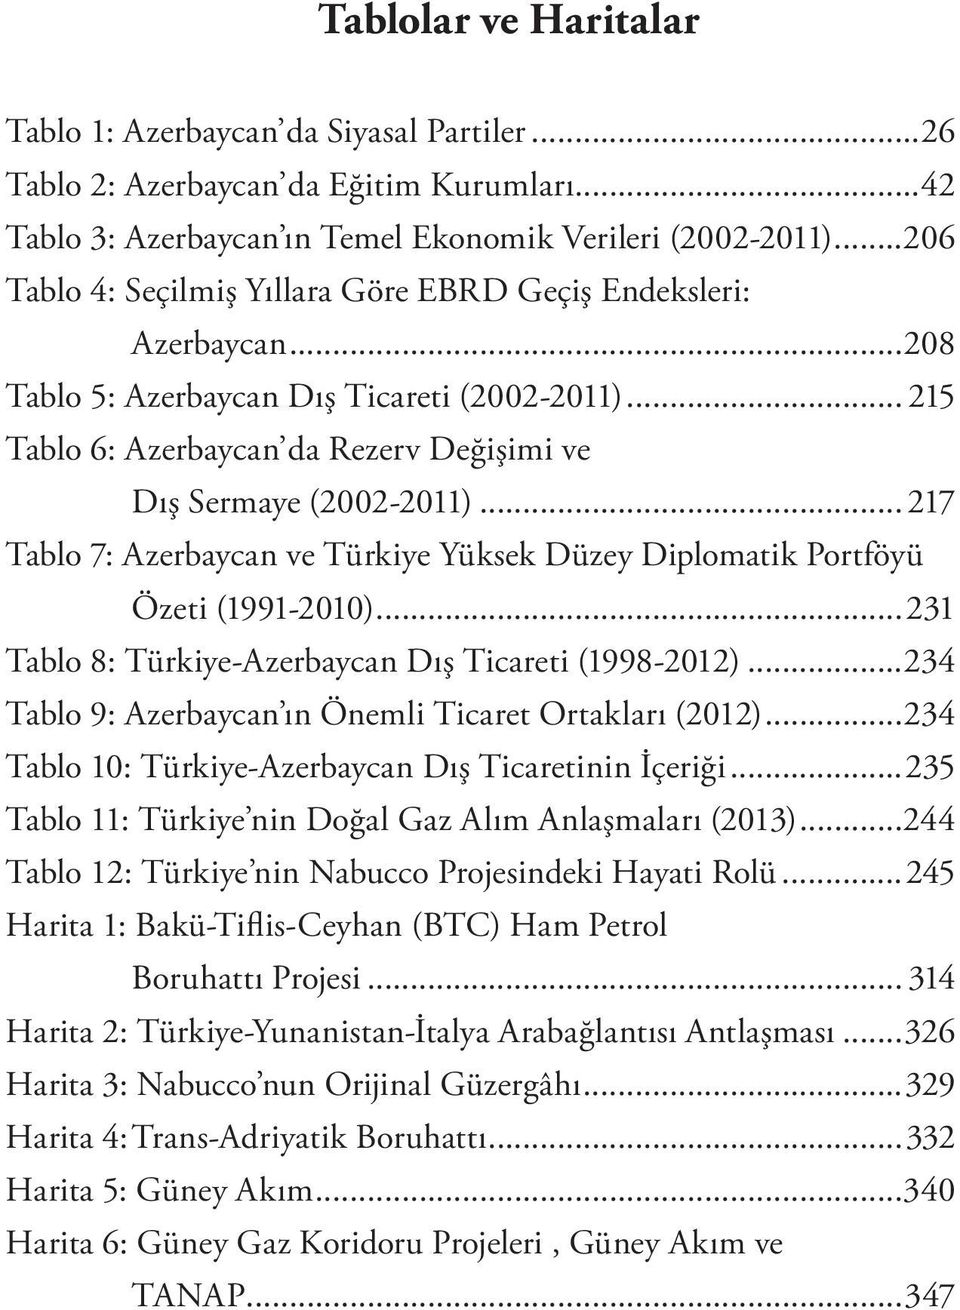 .. 217 Tablo 7: Azerbaycan ve Türkiye Yüksek Düzey Diplomatik Portföyü Özeti (1991-2010)...231 Tablo 8: Türkiye-Azerbaycan Dış Ticareti (1998-2012).